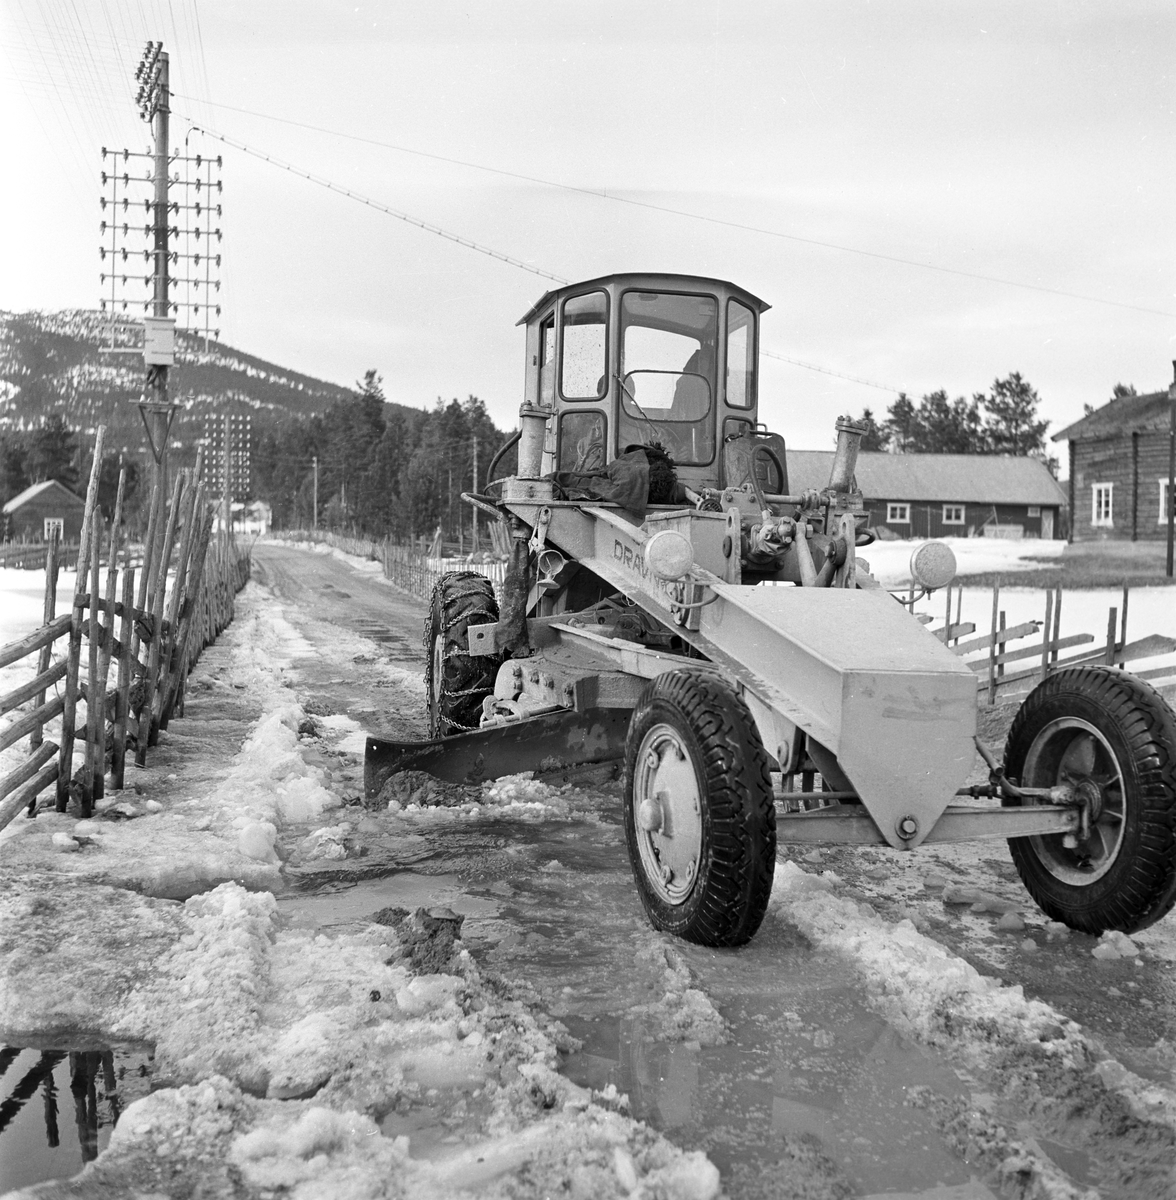 Serie. Teleløsning på veiene i Østerdalen. Fotografert april 1955.

